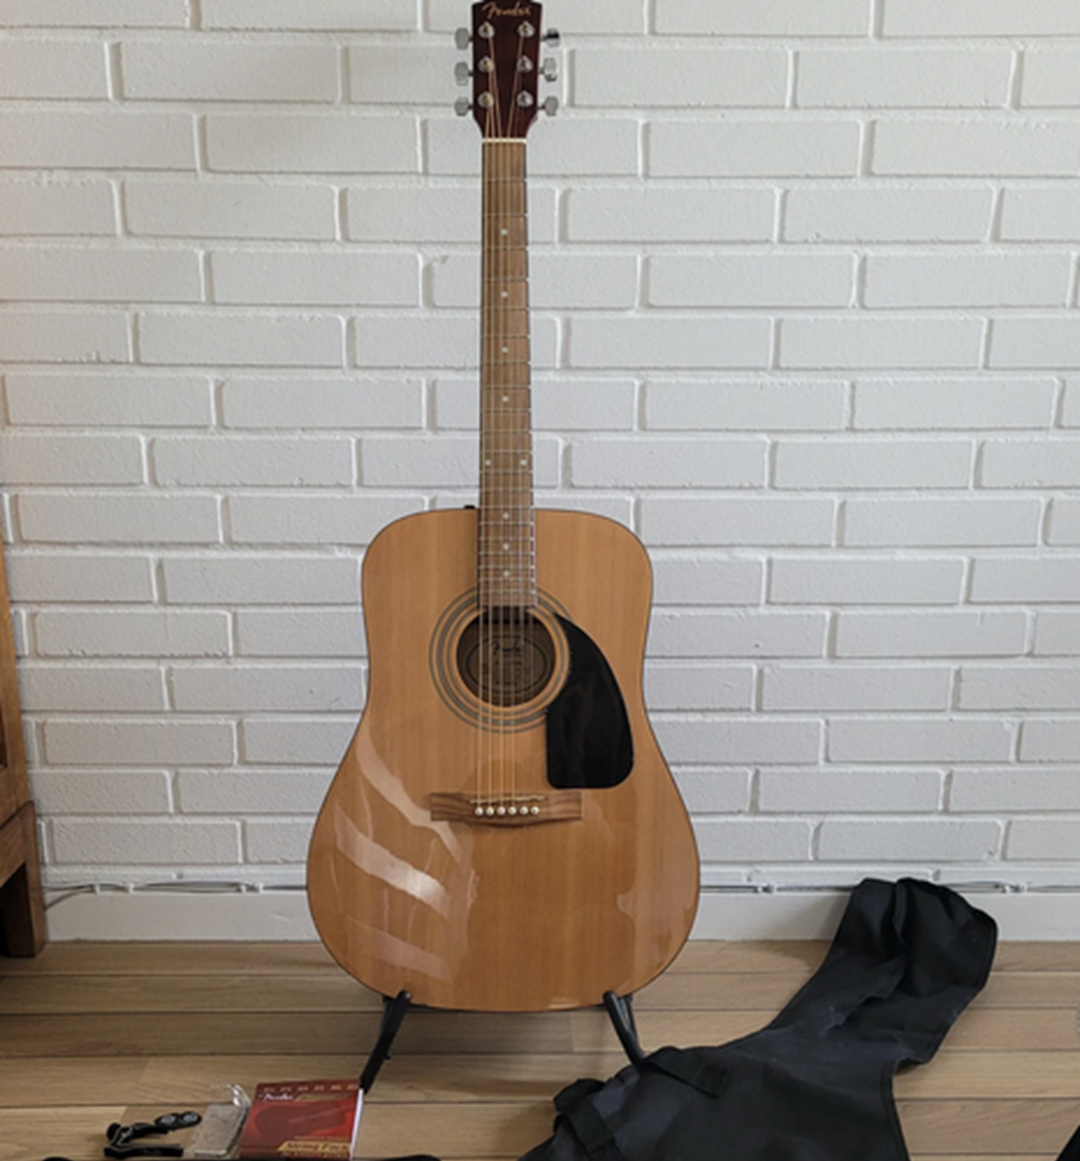 Tom fra Værløse vil gerne have 950 kroner i bytte for denne Fender FA-115 guitar.